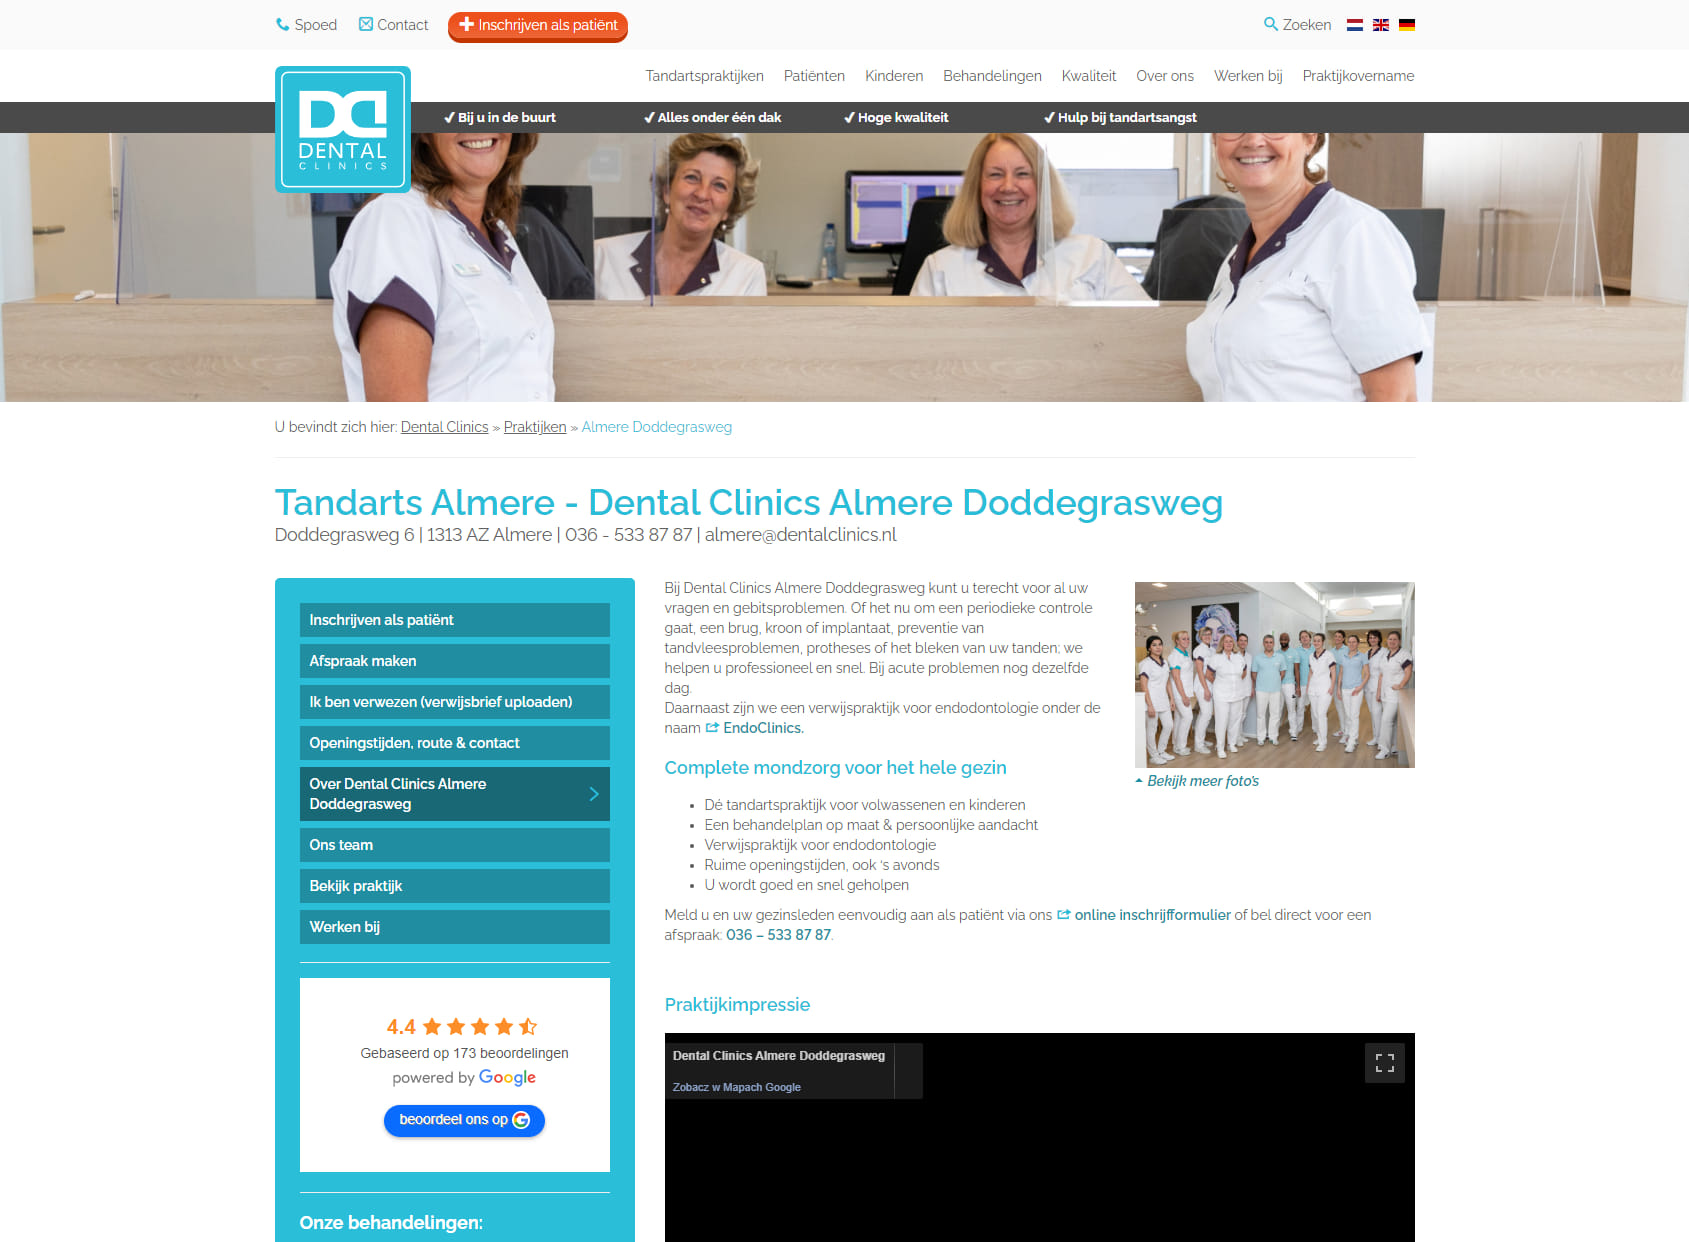 Dental Clinics Almere Doddegrasweg